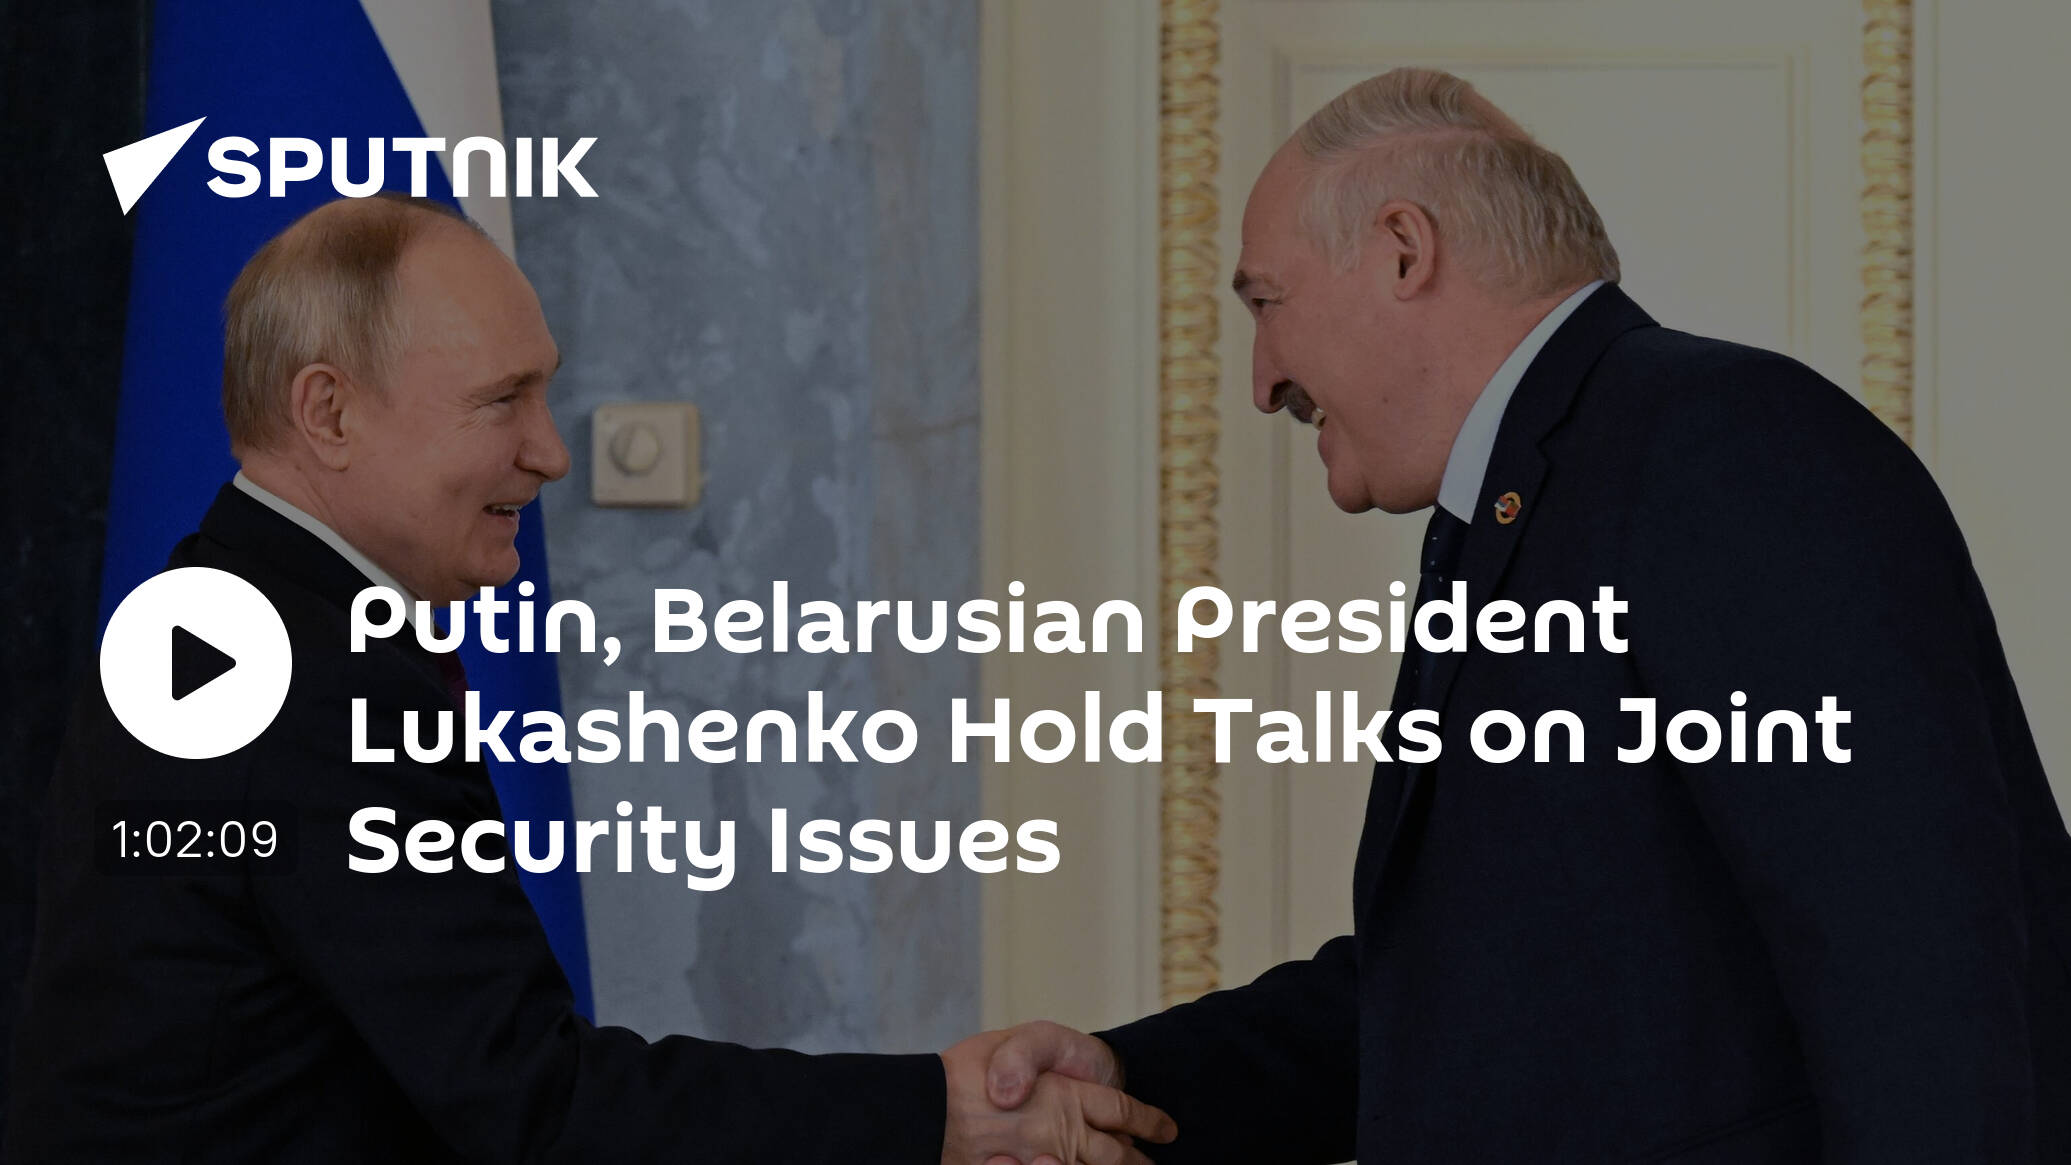 Putin Belarusian President Lukashenko Hold Talks on Joint Security Issues